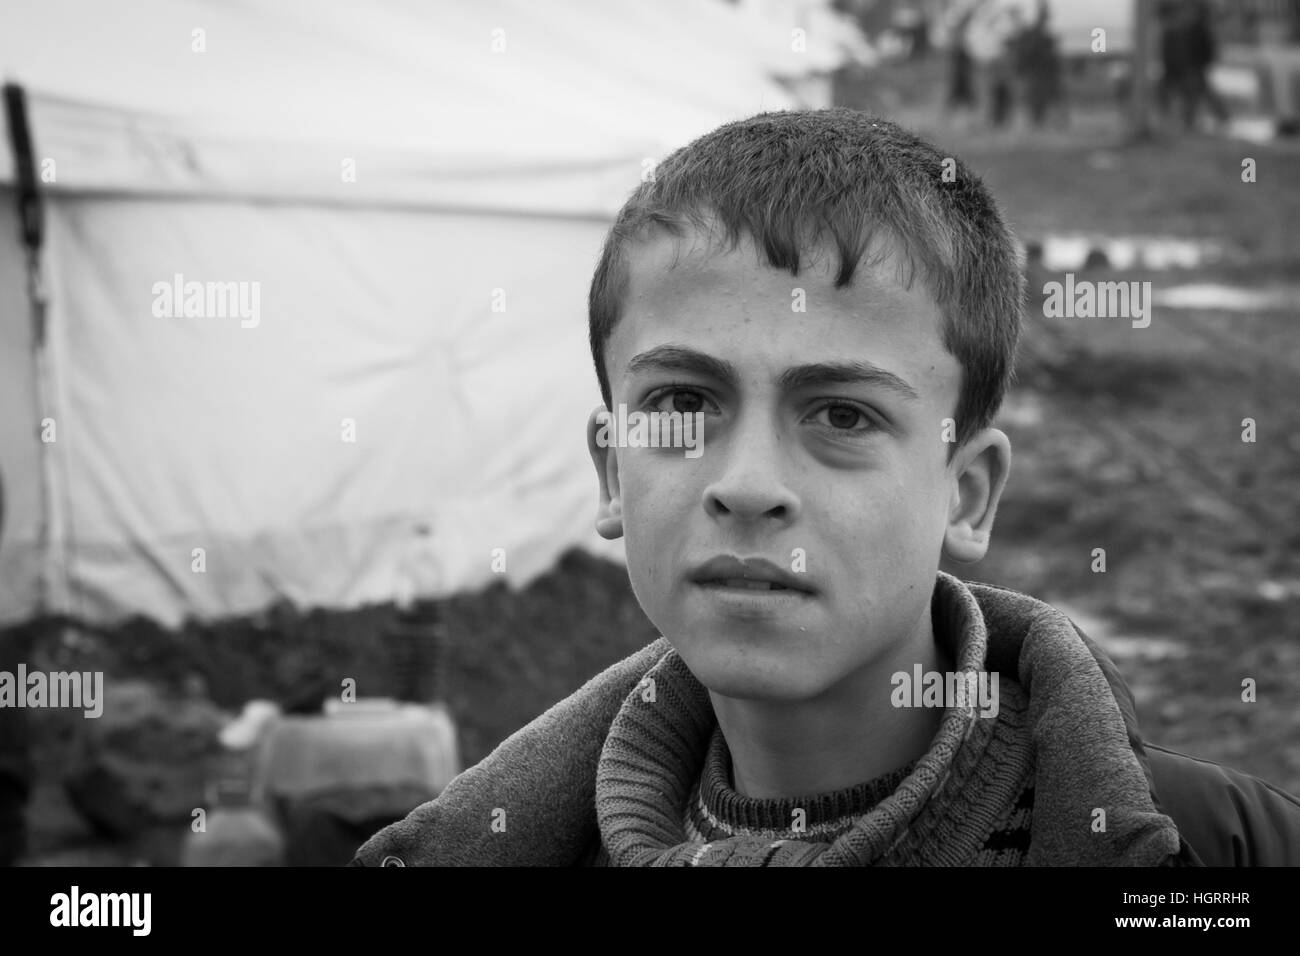 Azaz, Siria - 29 gennaio 2014. Siro Refugee Camp vicino al villaggio di Azaz 60 chilometri da Aleppo in Siria vicino al confine con la Turchia in Kilis. Foto Stock